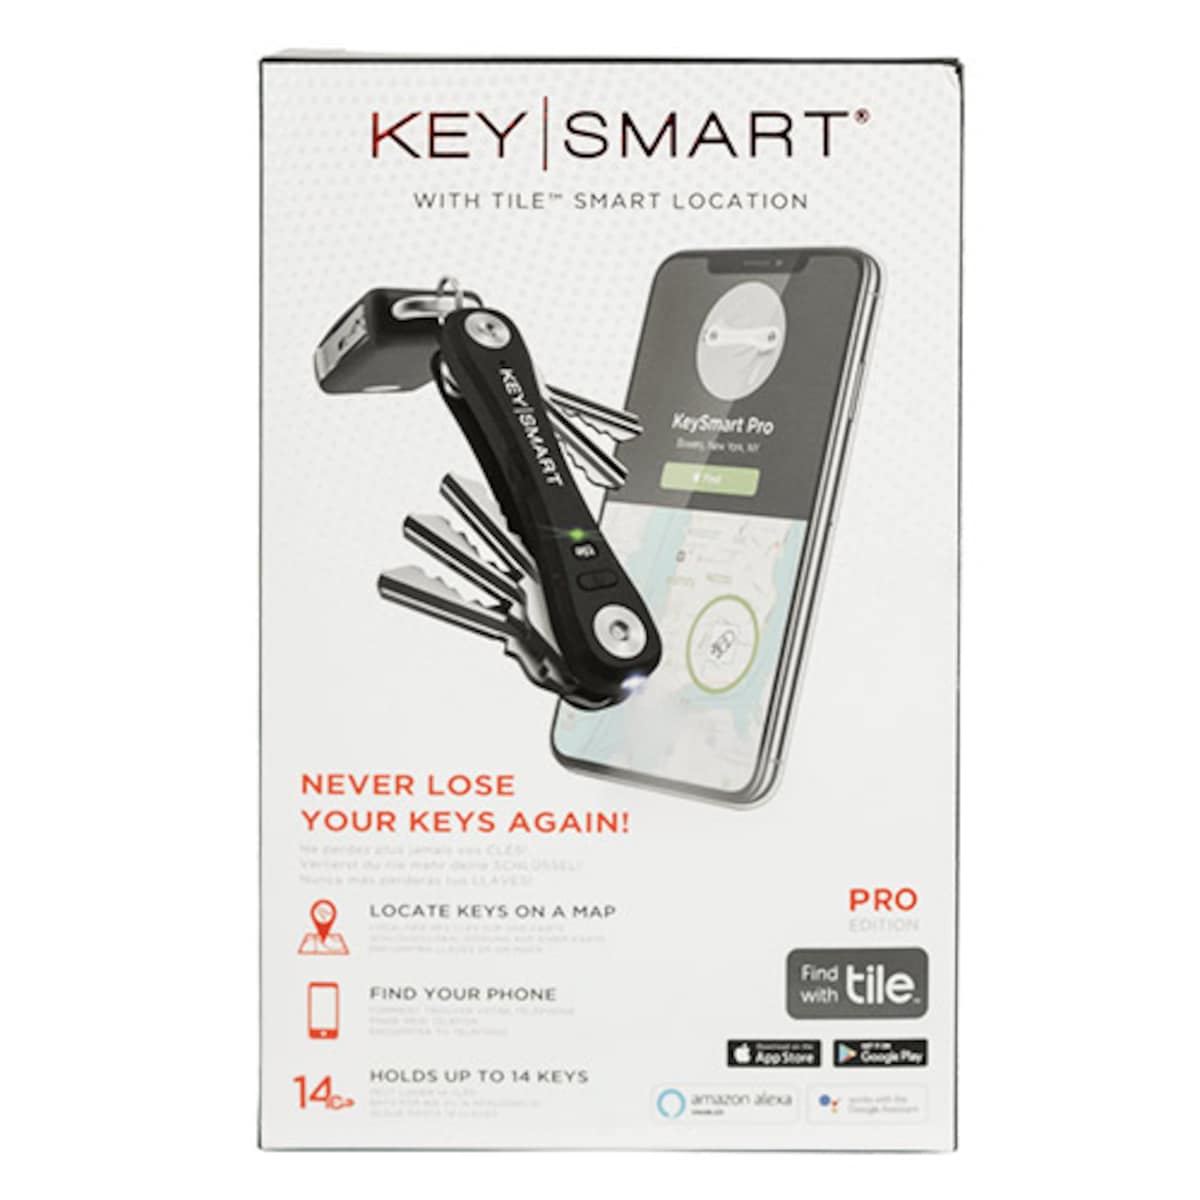 KeySmart Pro Tile Smart Location Tracking (up to 14 Keys) Black